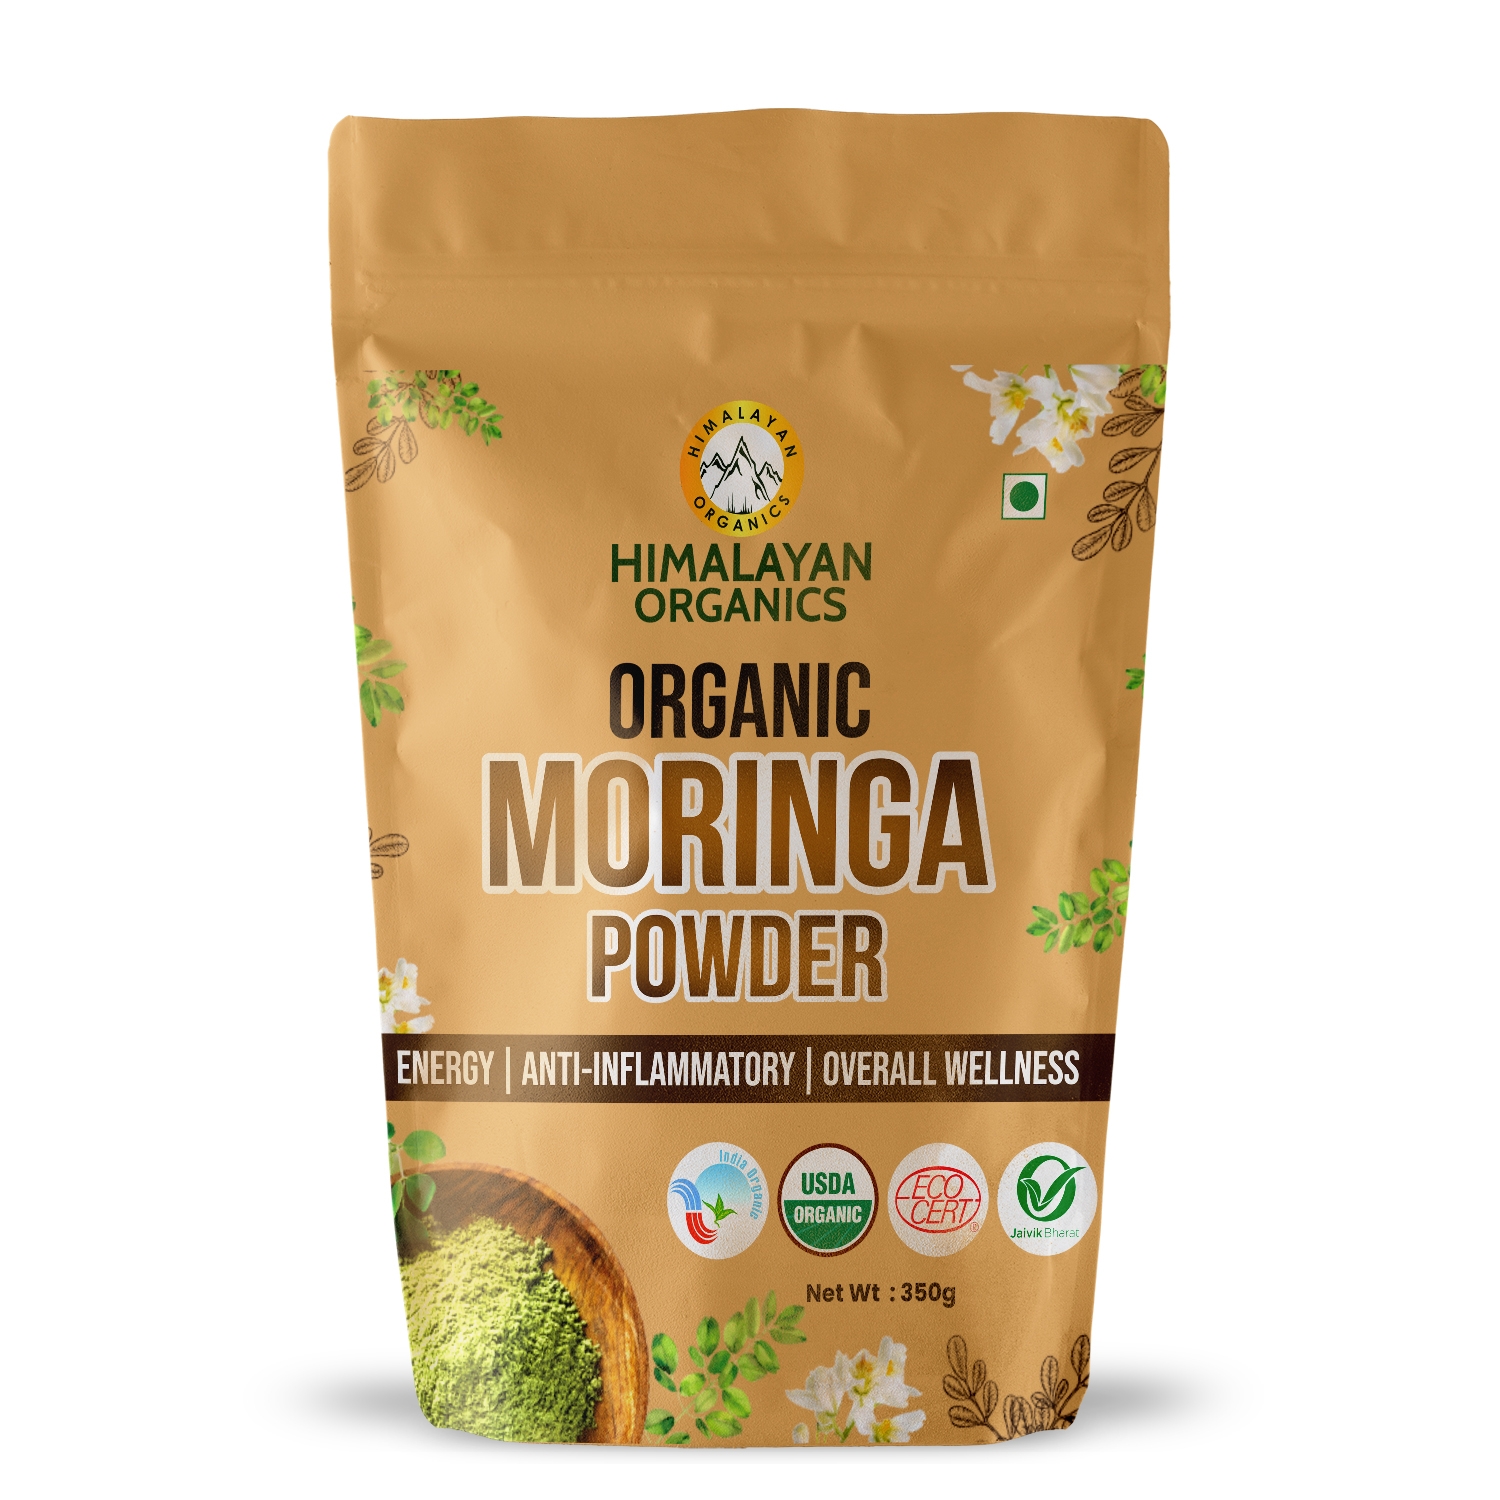 Himalayan Organics | Himalayan Organics Certified Organic Moringa Powder (Moringa Oleifera) - Herbal Supplement for Overall Wellness